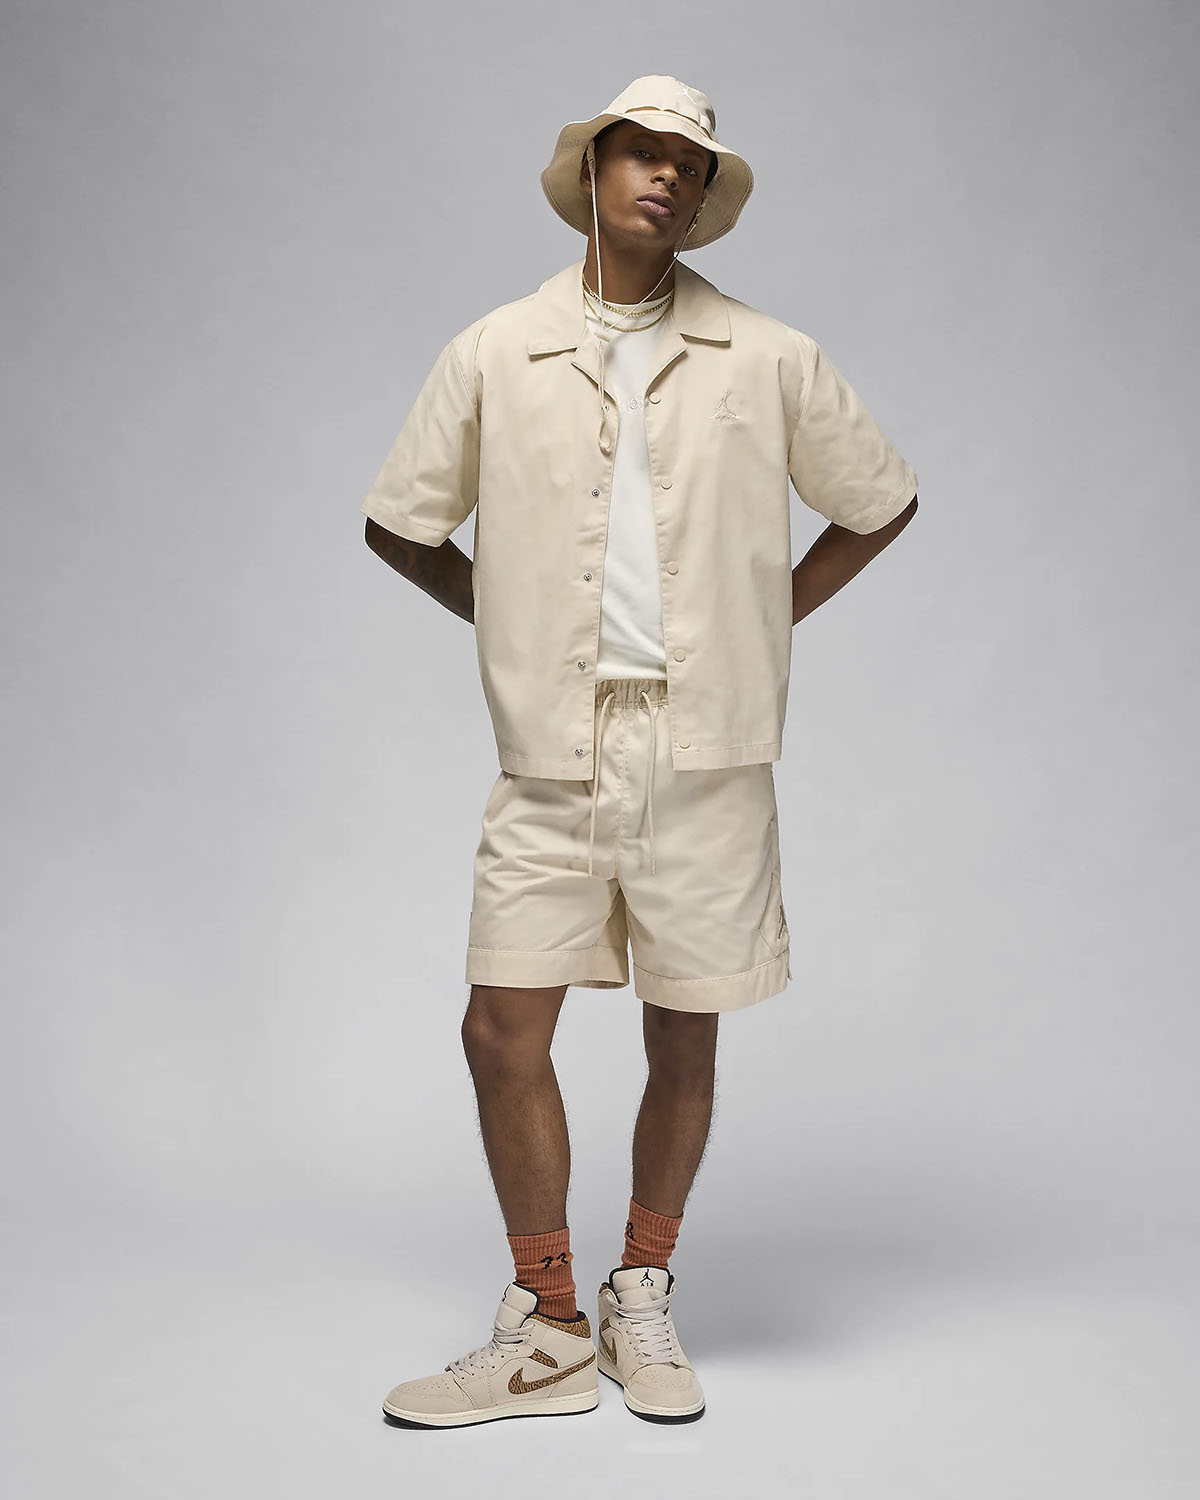 Jordan Legend Light Brown Shirt Shorts Hat Outfit